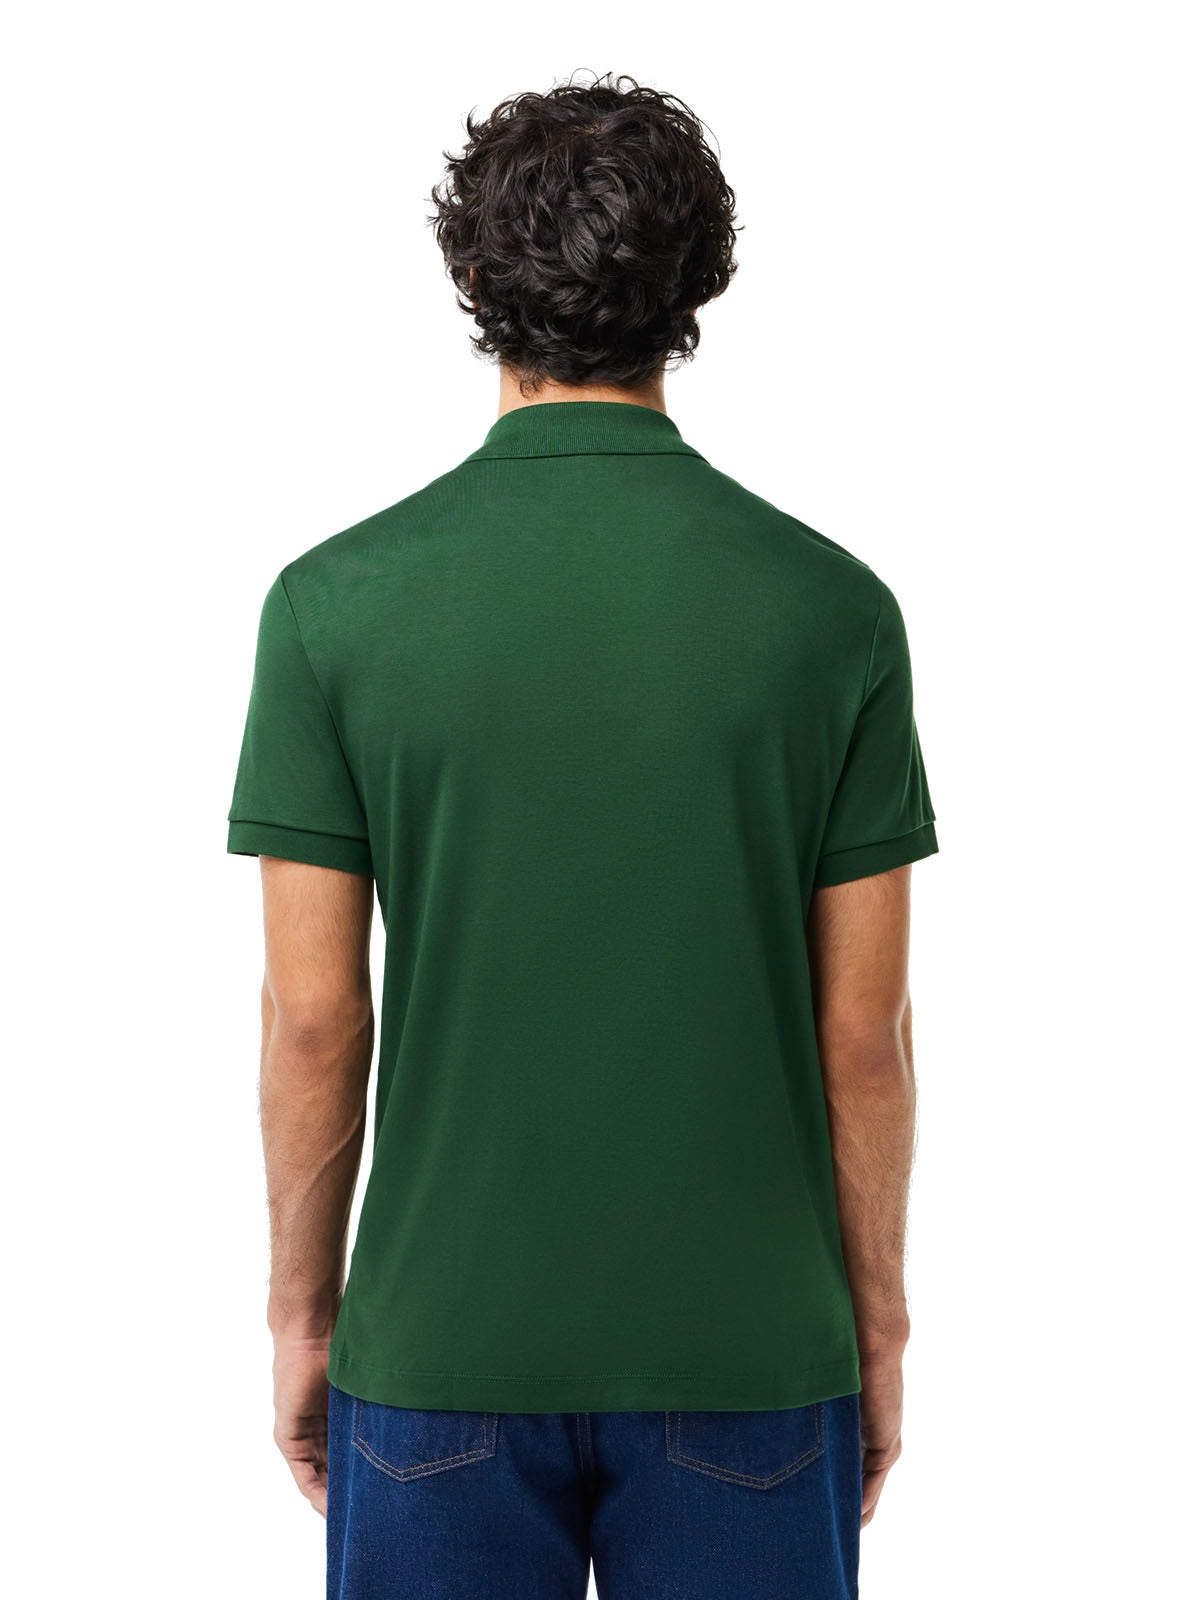 Polo Uomo Lacoste - Polo Regular Fit In Cotone Pima Lacoste - Verde